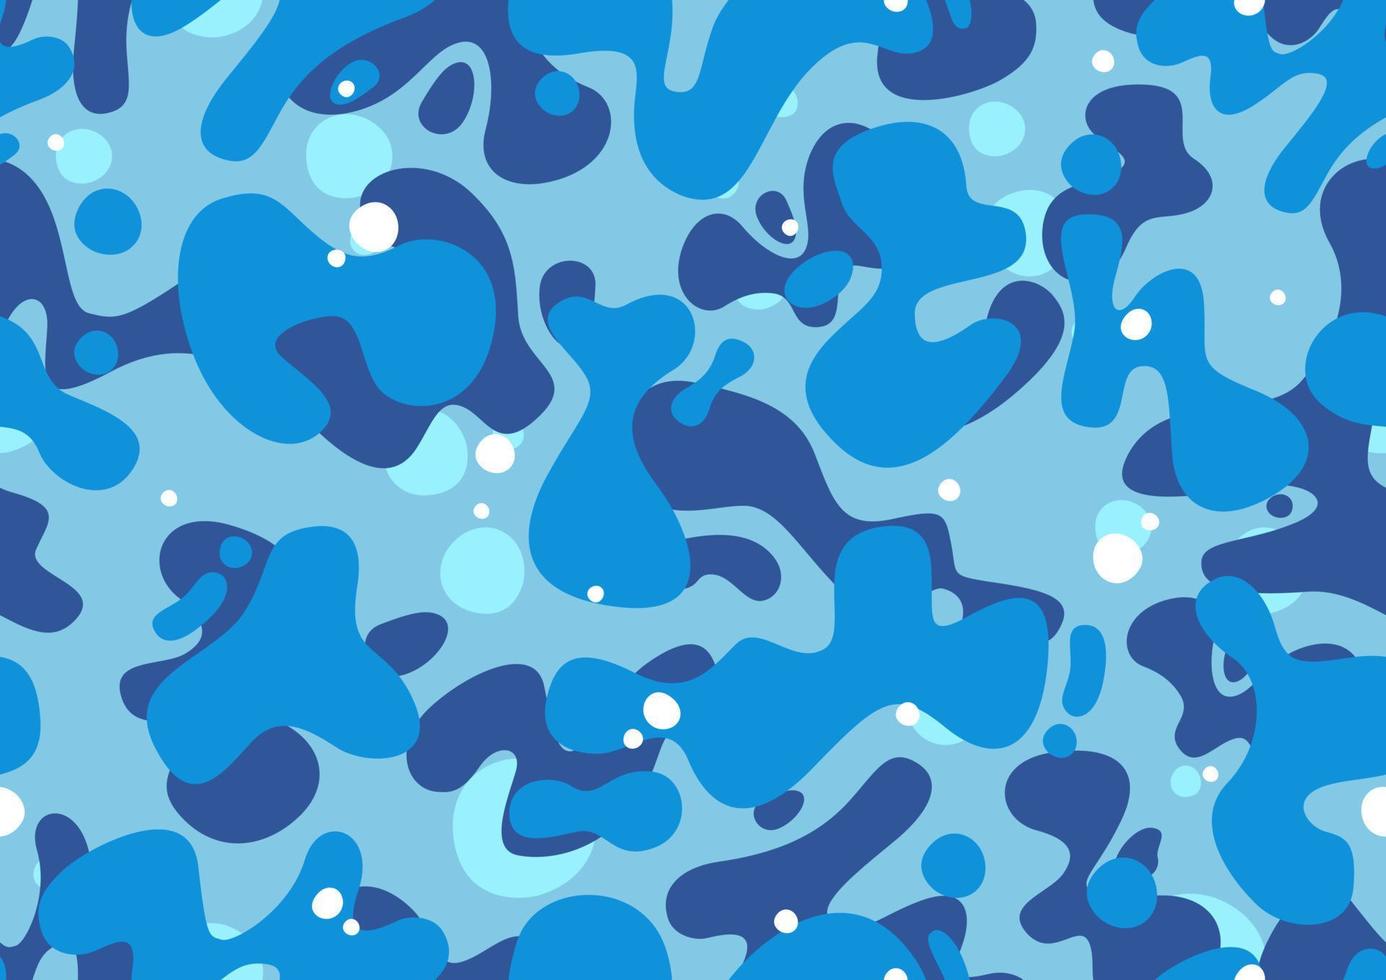 modèle sans couture de camouflage bleu marine, vecteur eps modifiable. conception de camouflage de dessin animé dans les couleurs bleu, cyan et marine, texture de mode, graphismes streetwear.